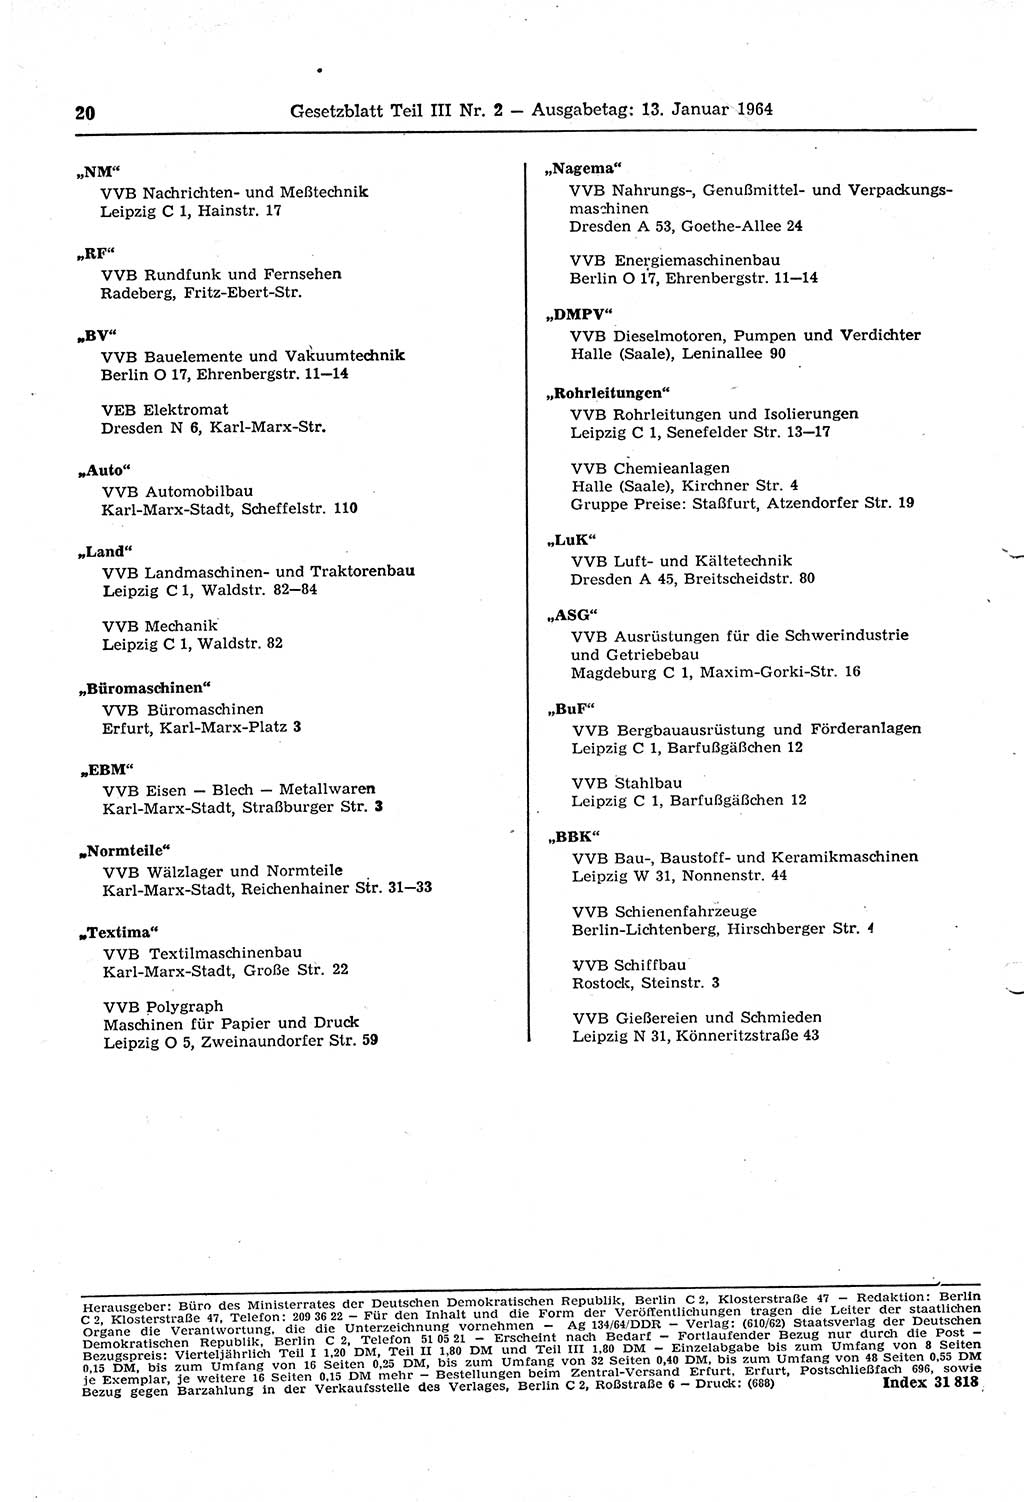 Gesetzblatt (GBl.) der Deutschen Demokratischen Republik (DDR) Teil ⅠⅠⅠ 1964, Seite 20 (GBl. DDR ⅠⅠⅠ 1964, S. 20)